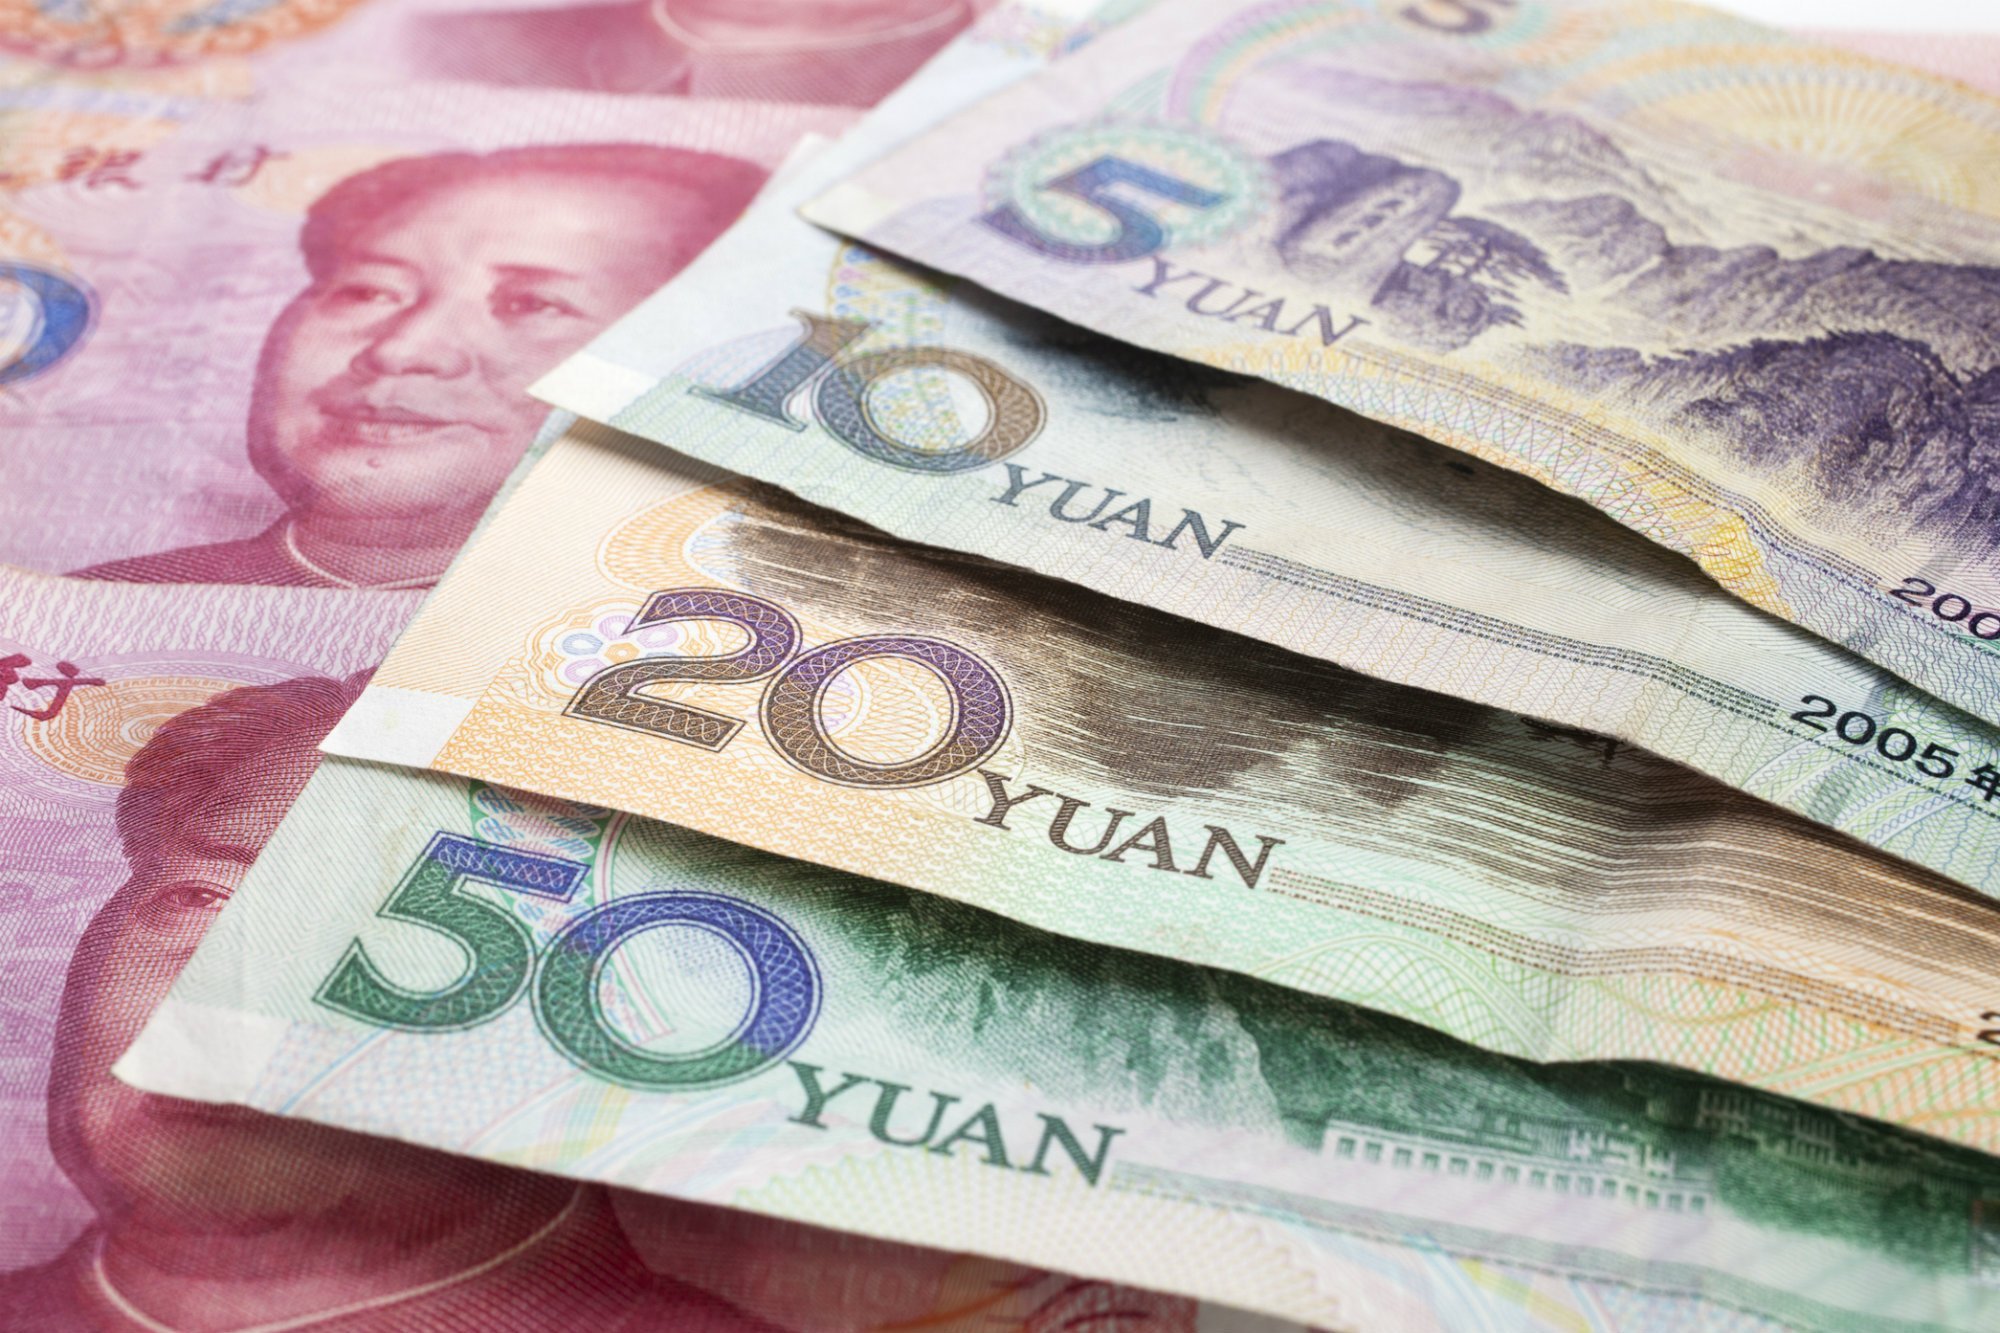 Nhân dân tệ Trung Quốc (China Yuan Renminbi – CNY) là gì? Phân biệt giữa renminbi và yuan - Ảnh 1.